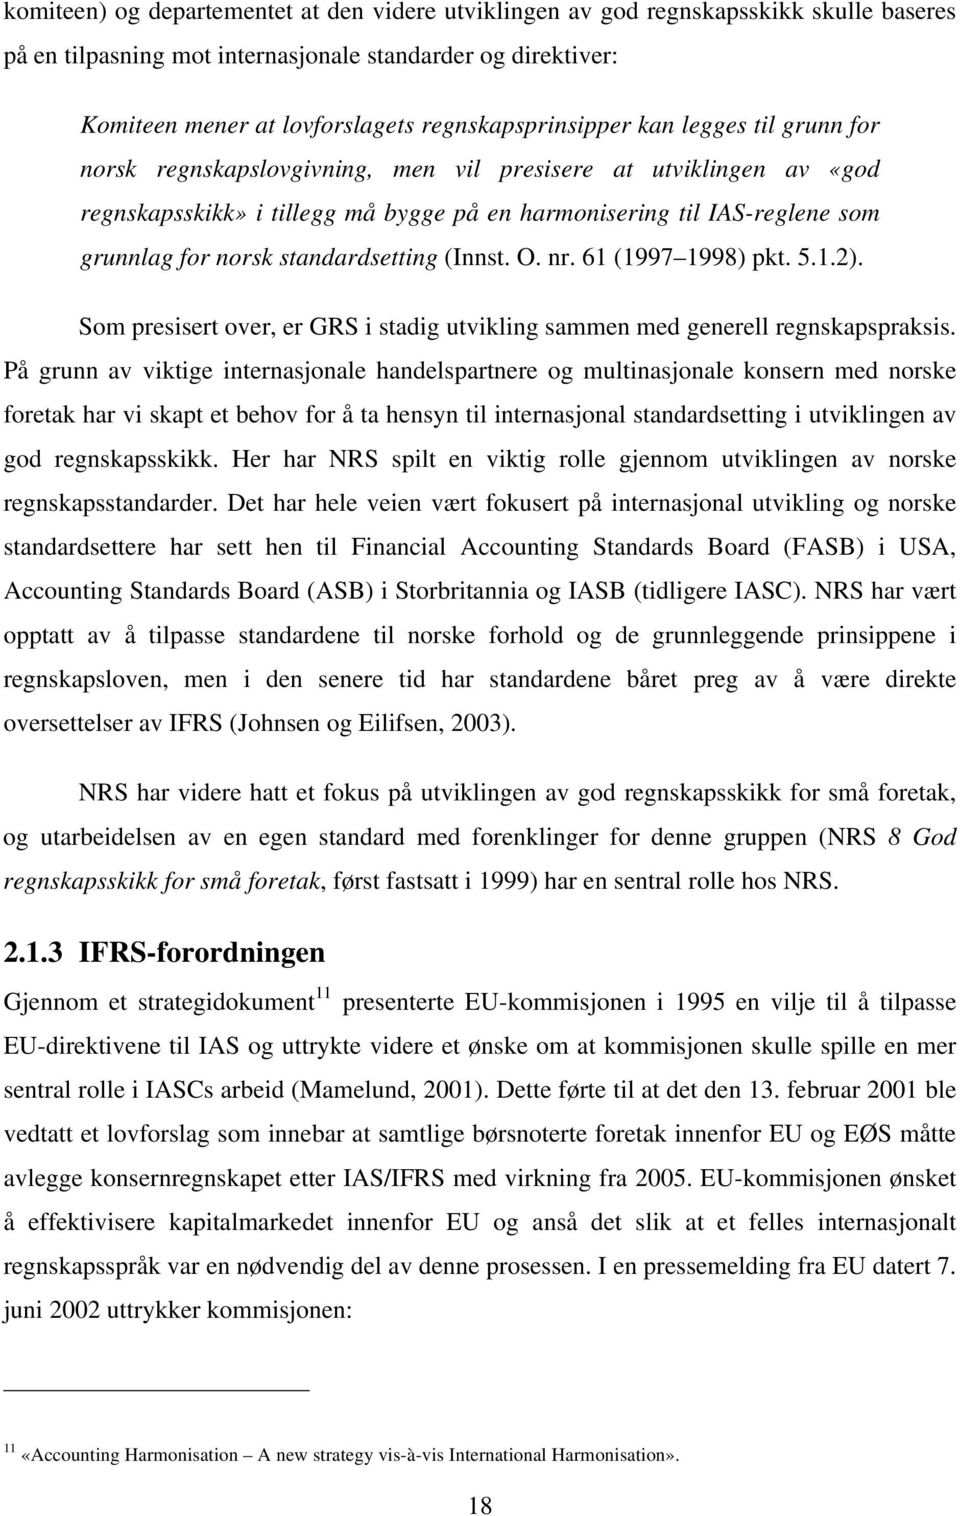 for norsk standardsetting (Innst. O. nr. 61 (1997 1998) pkt. 5.1.2). Som presisert over, er GRS i stadig utvikling sammen med generell regnskapspraksis.